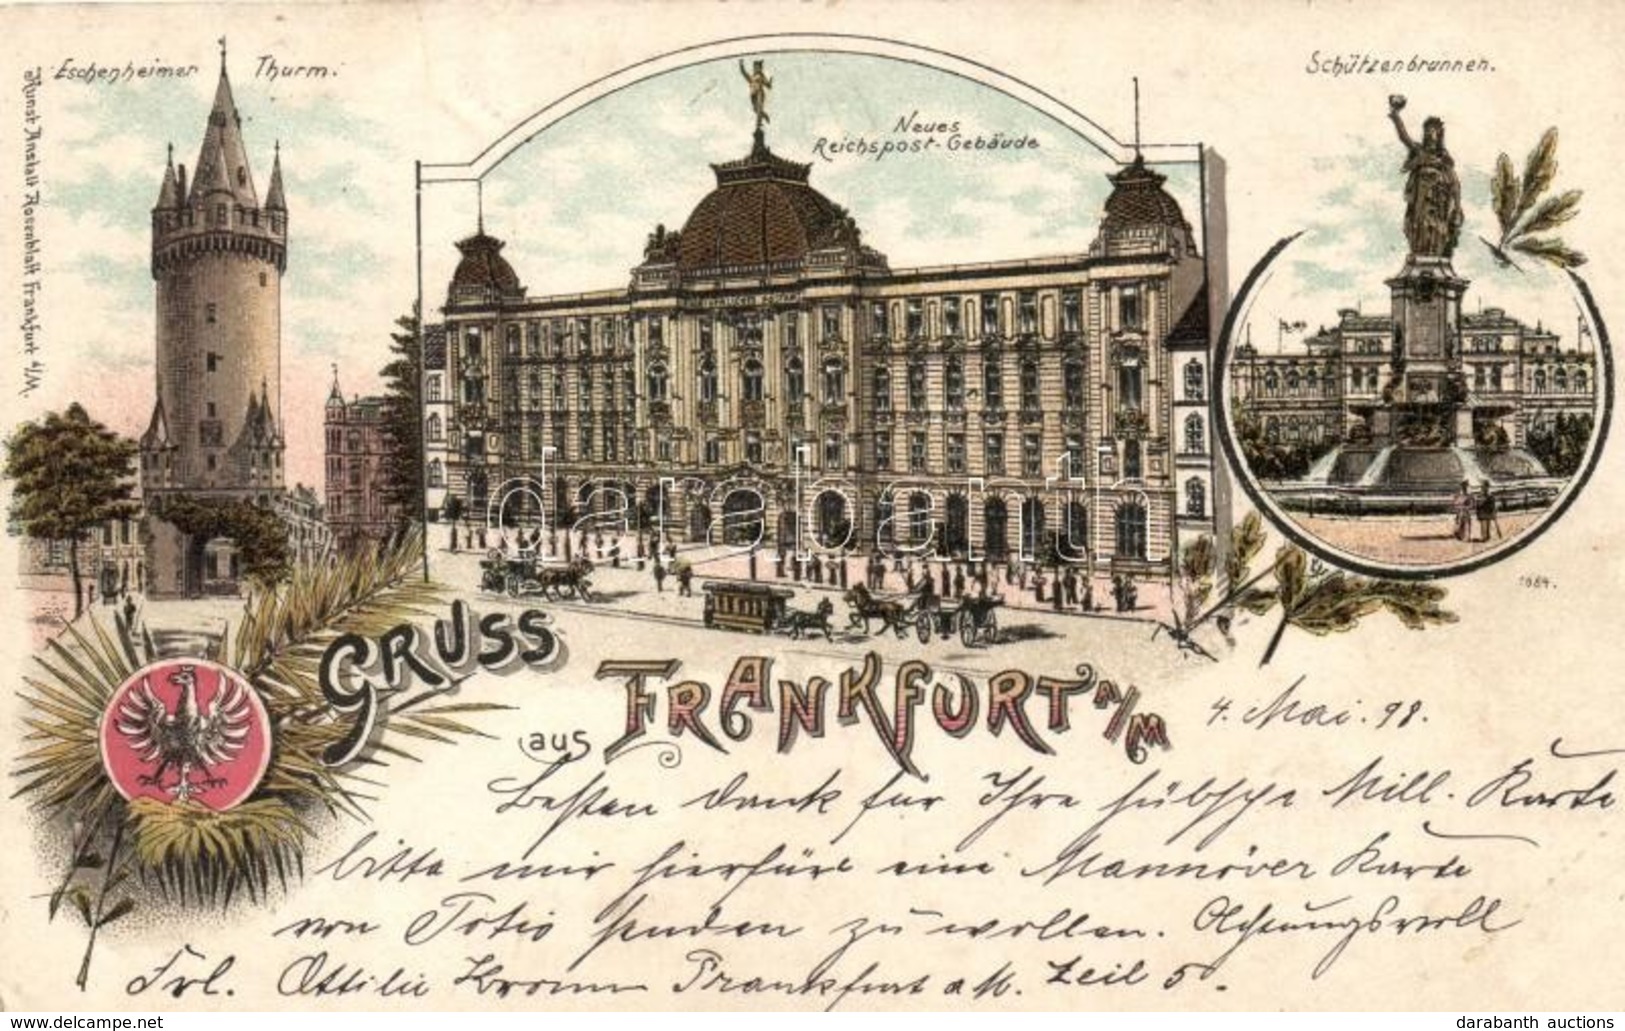 T2/T3 1898 Frankfurt, Eschenheimer Thurm, Neues Reichspost-Gebaude, Schützenbrunnen / Tower, Post Office, Fountain, Kuns - Unclassified